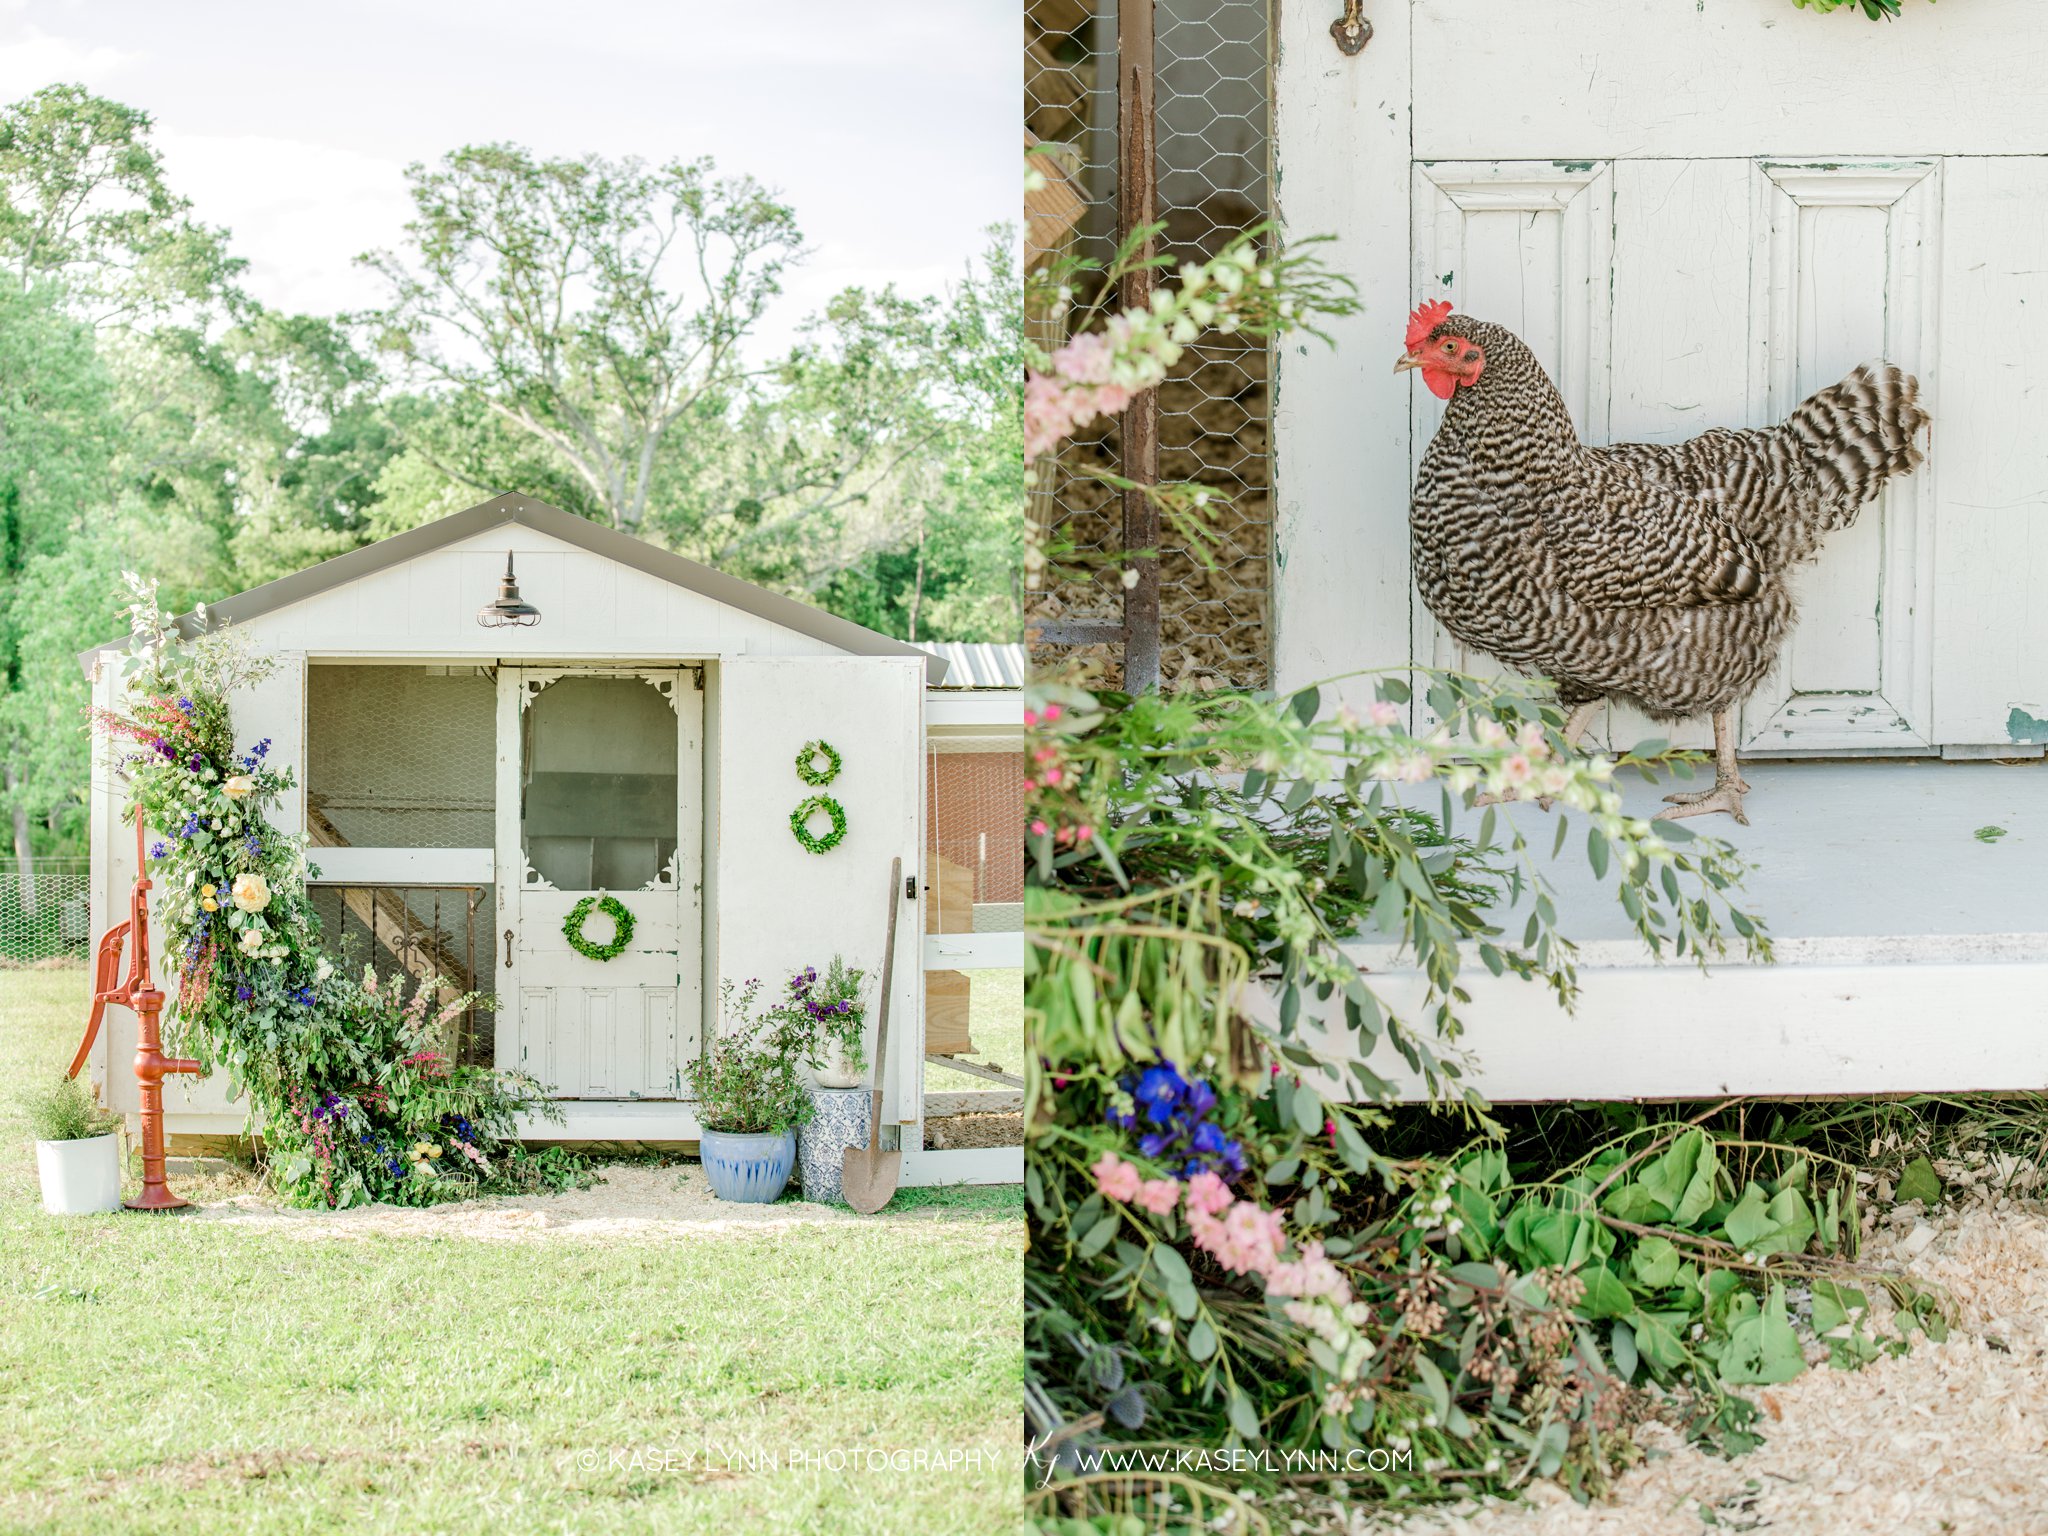 Family Farm / Kasey Lynn Photography